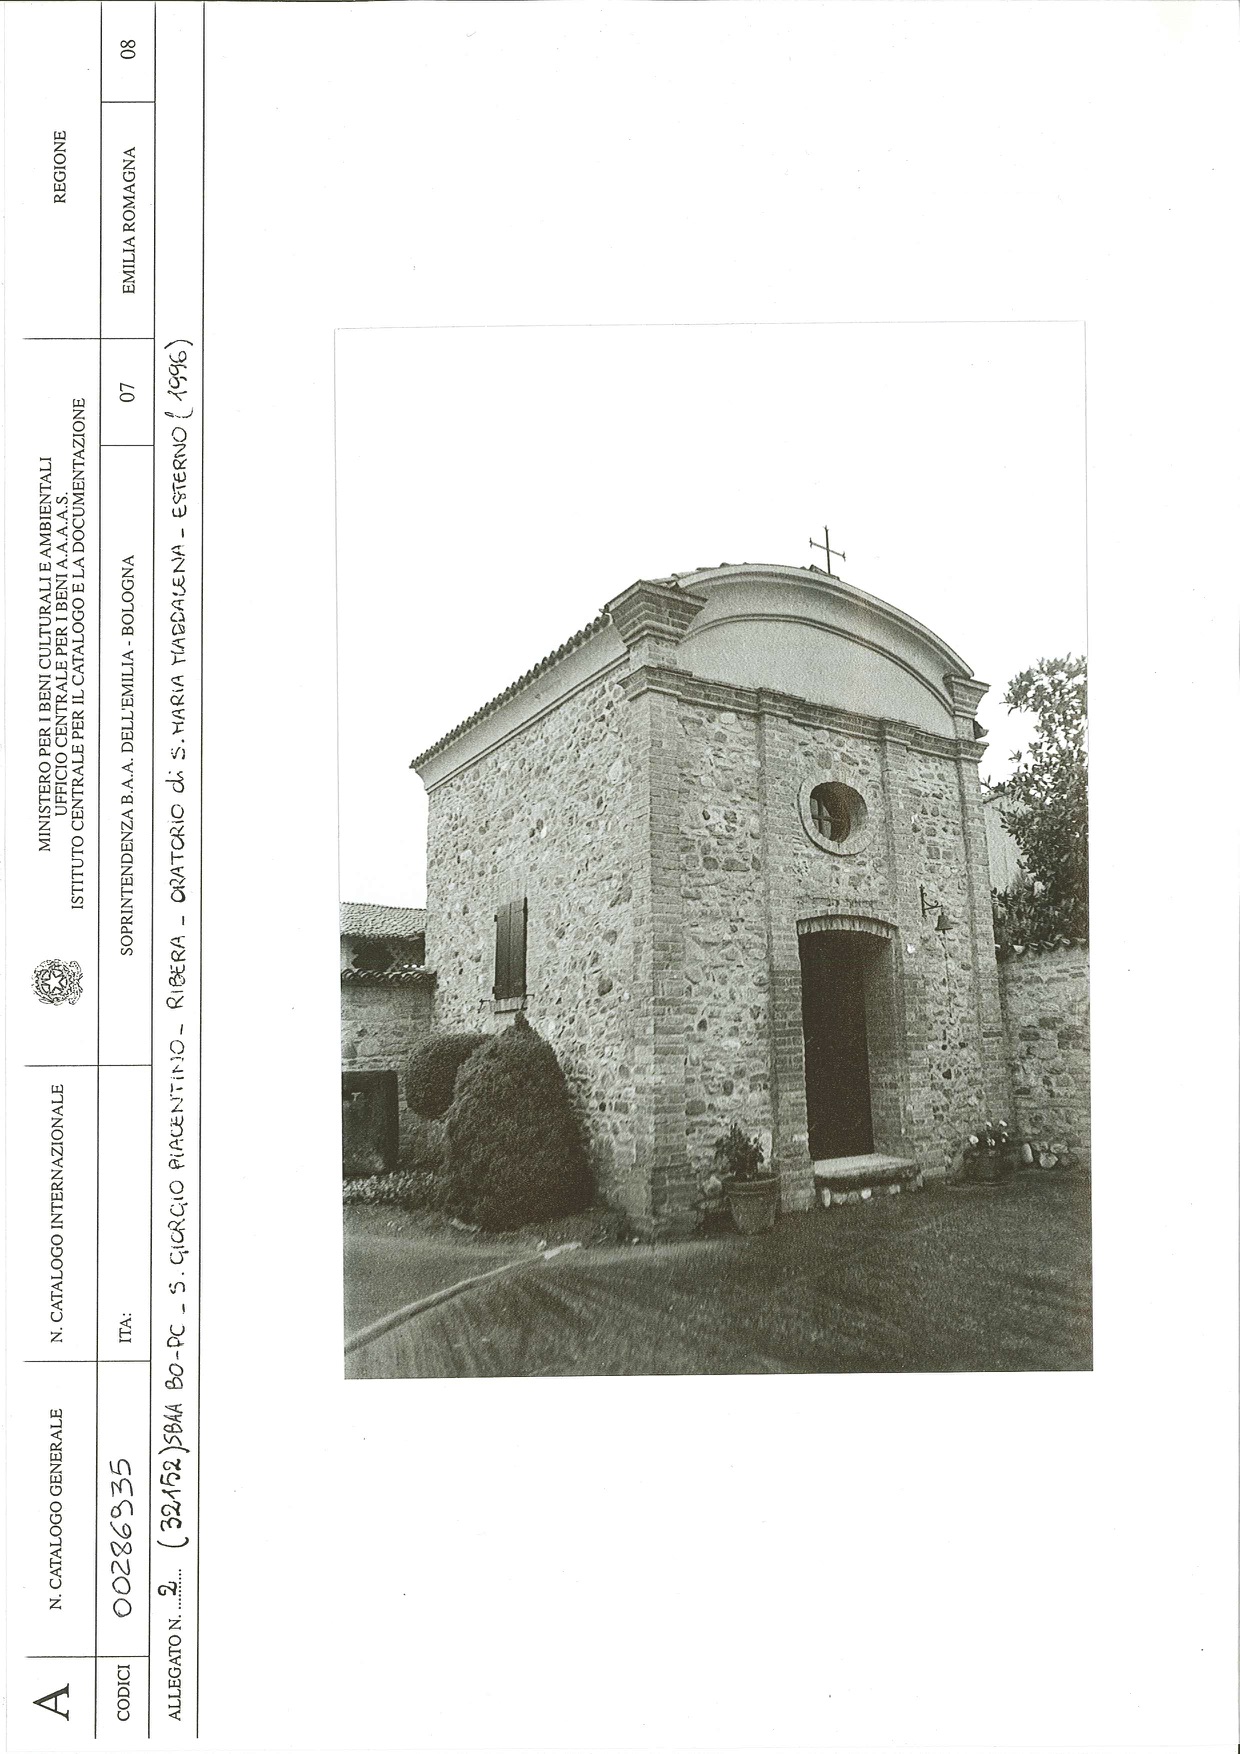 Palazzo Ribera (insediamento agricolo complesso, a corte chiusa) - San Giorgio Piacentino (PC) 